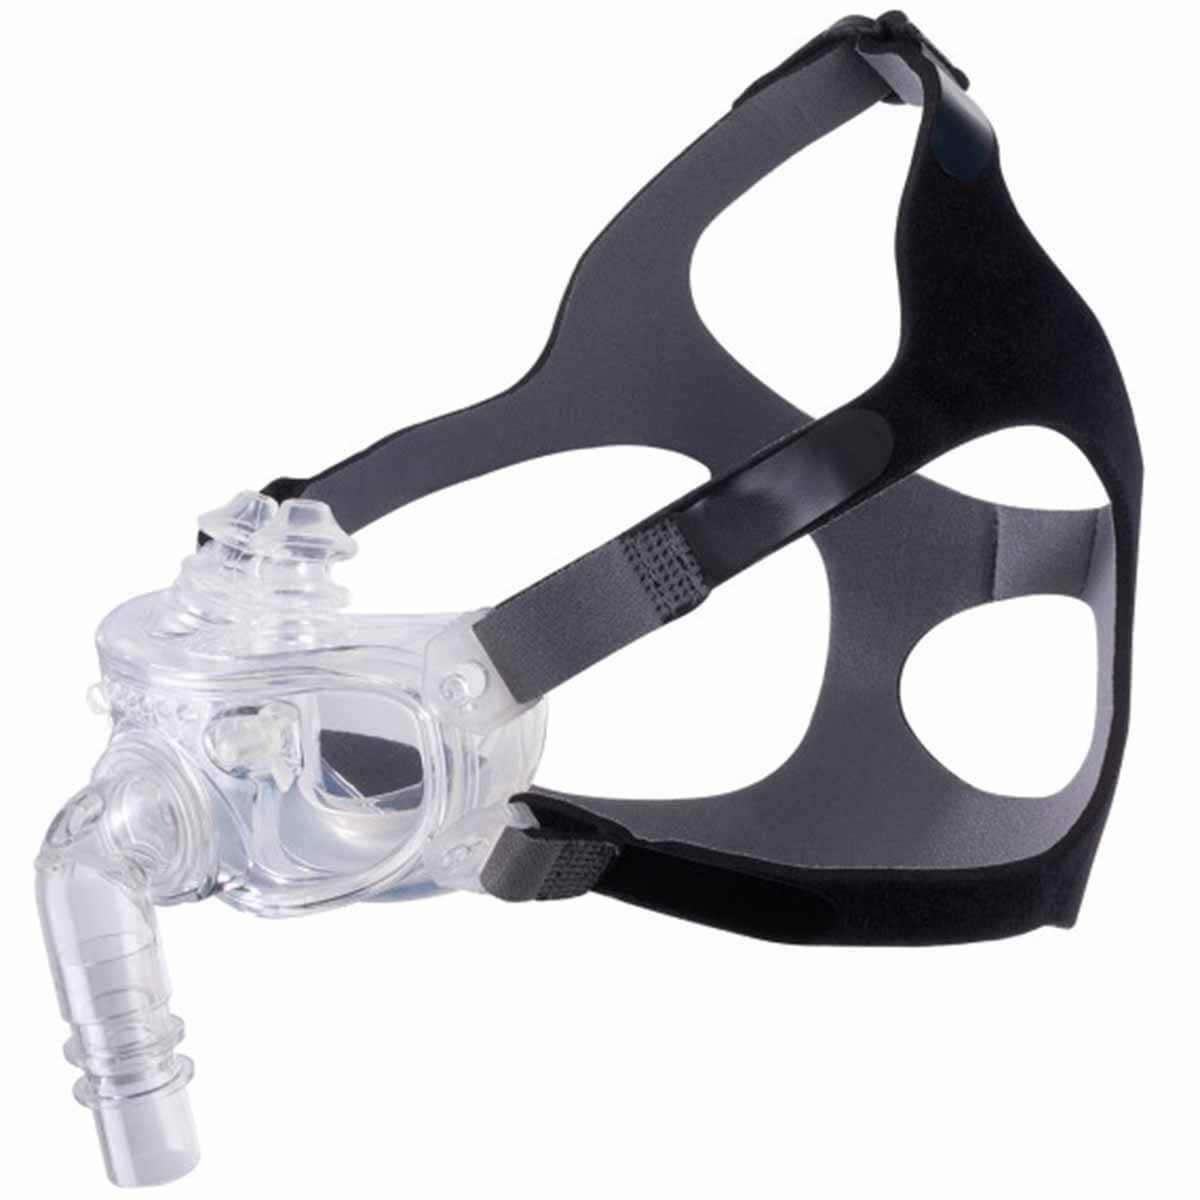 Salter Labs Hybrid Dual-Airway CPAP Mask